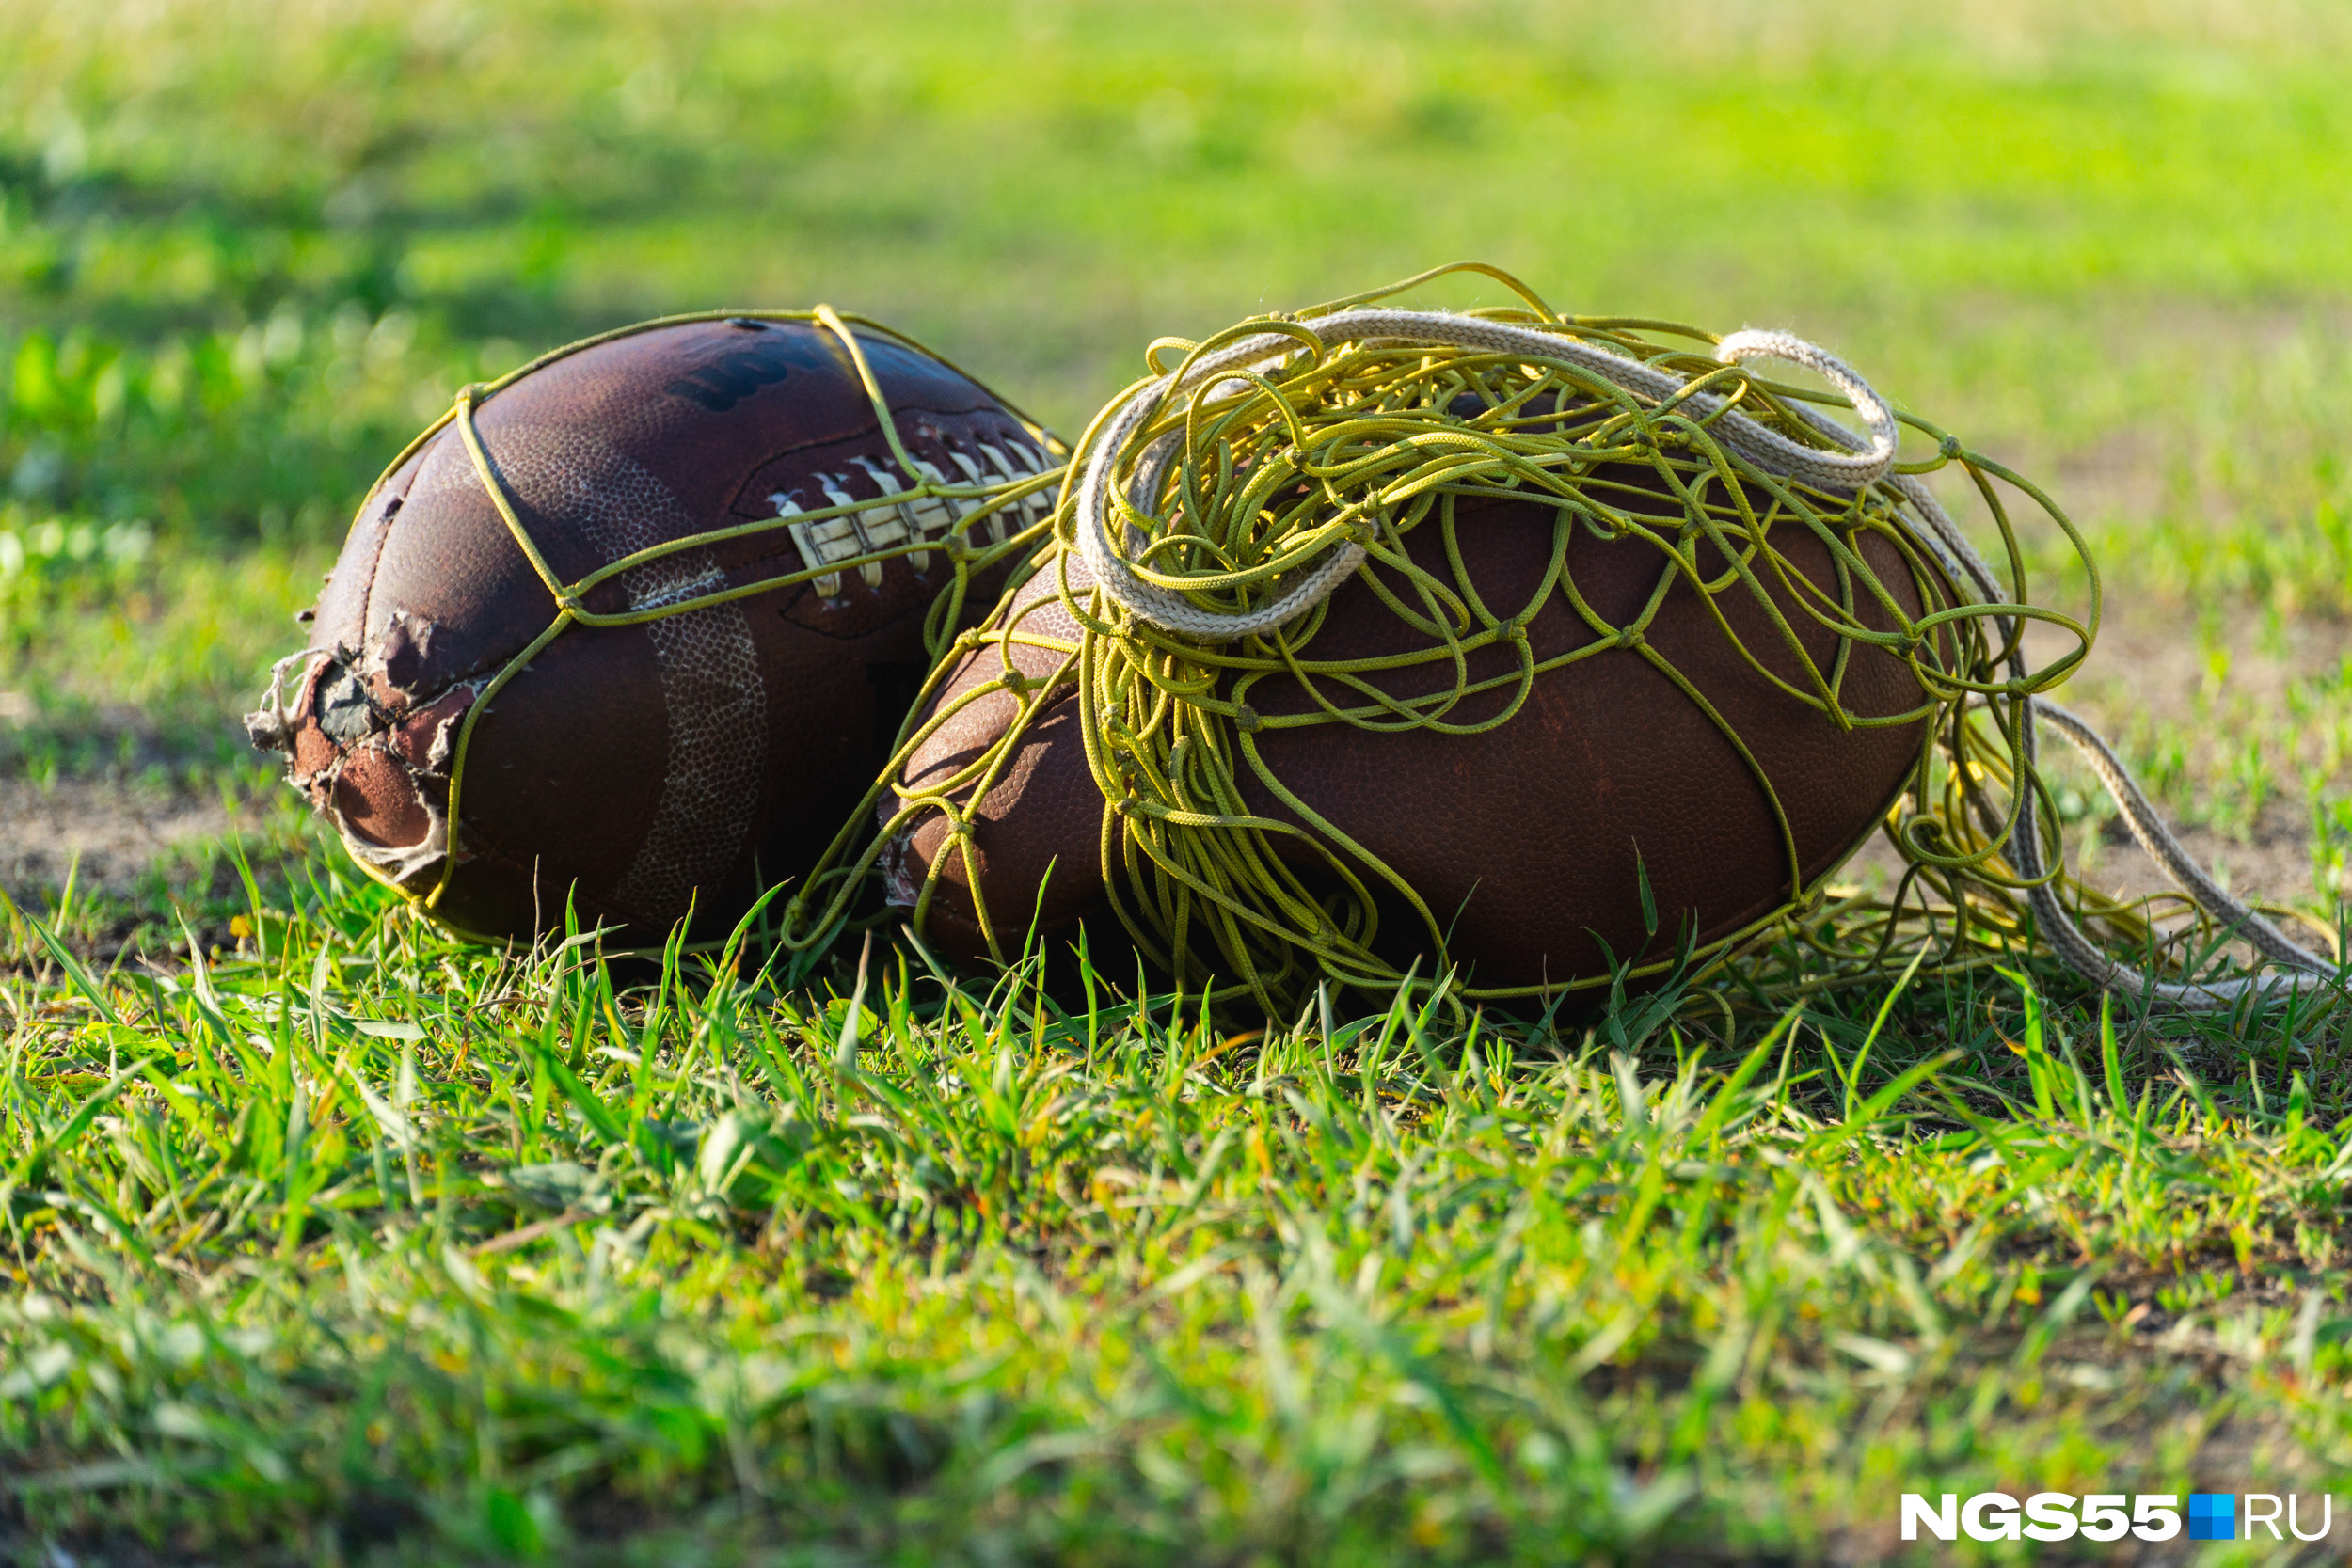 Мячи для американского футбола лёгкие и шершавые — это нужно для более удобного захвата